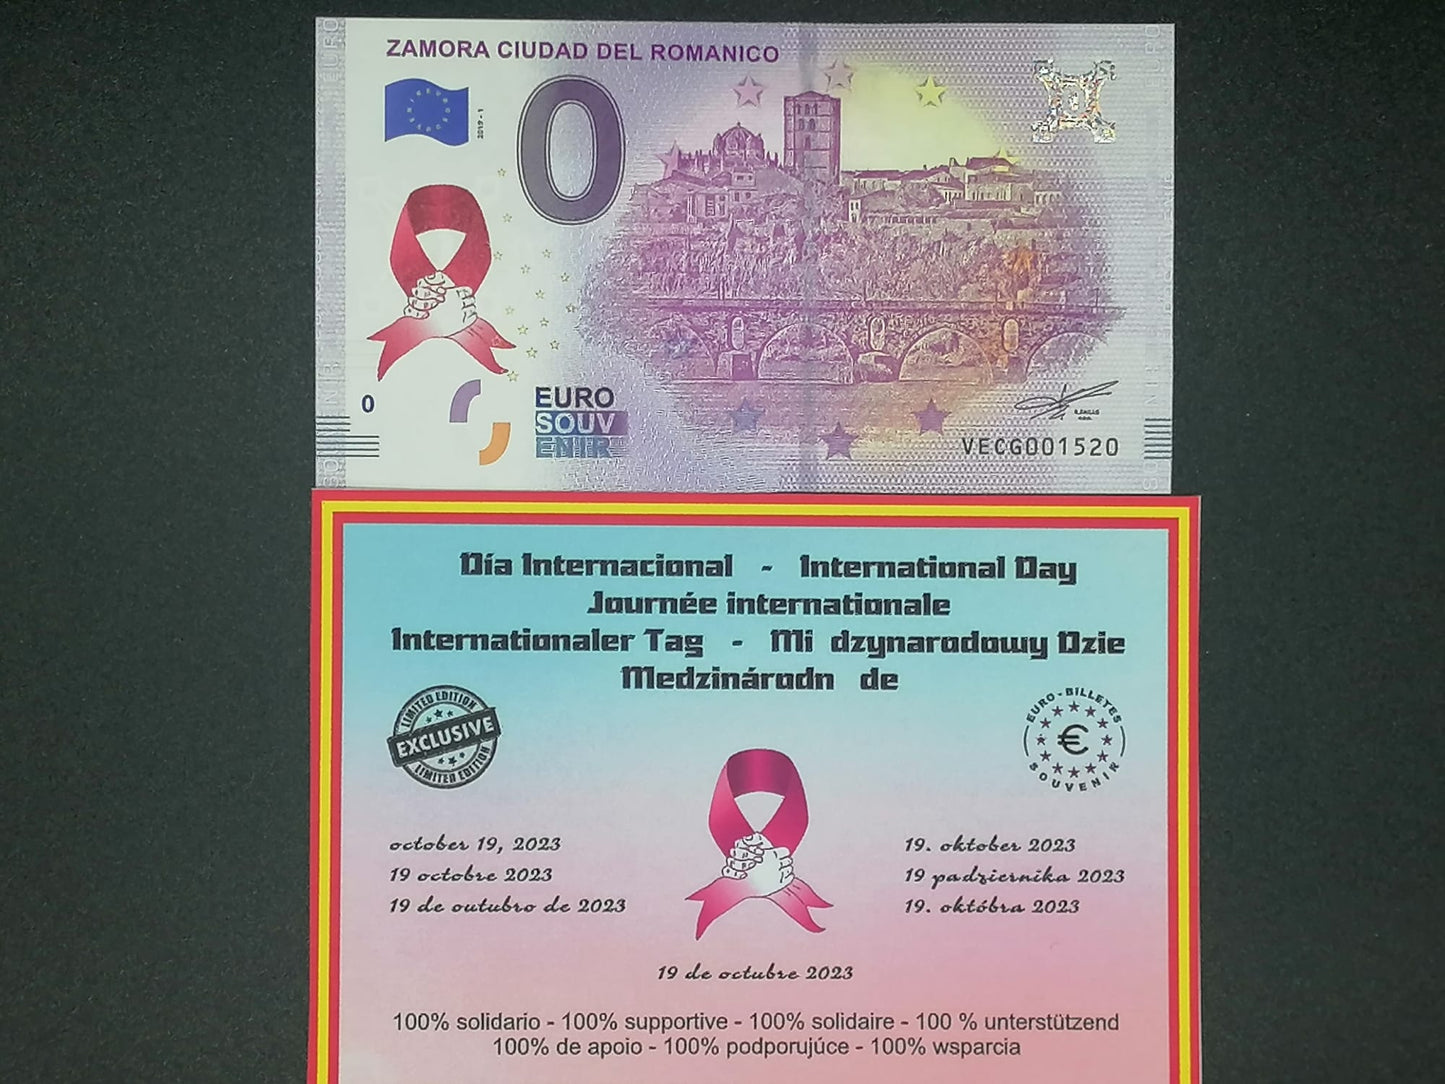 Edición 2023 Día Internacional del cancer Zamora Ciudad del Románico con sello